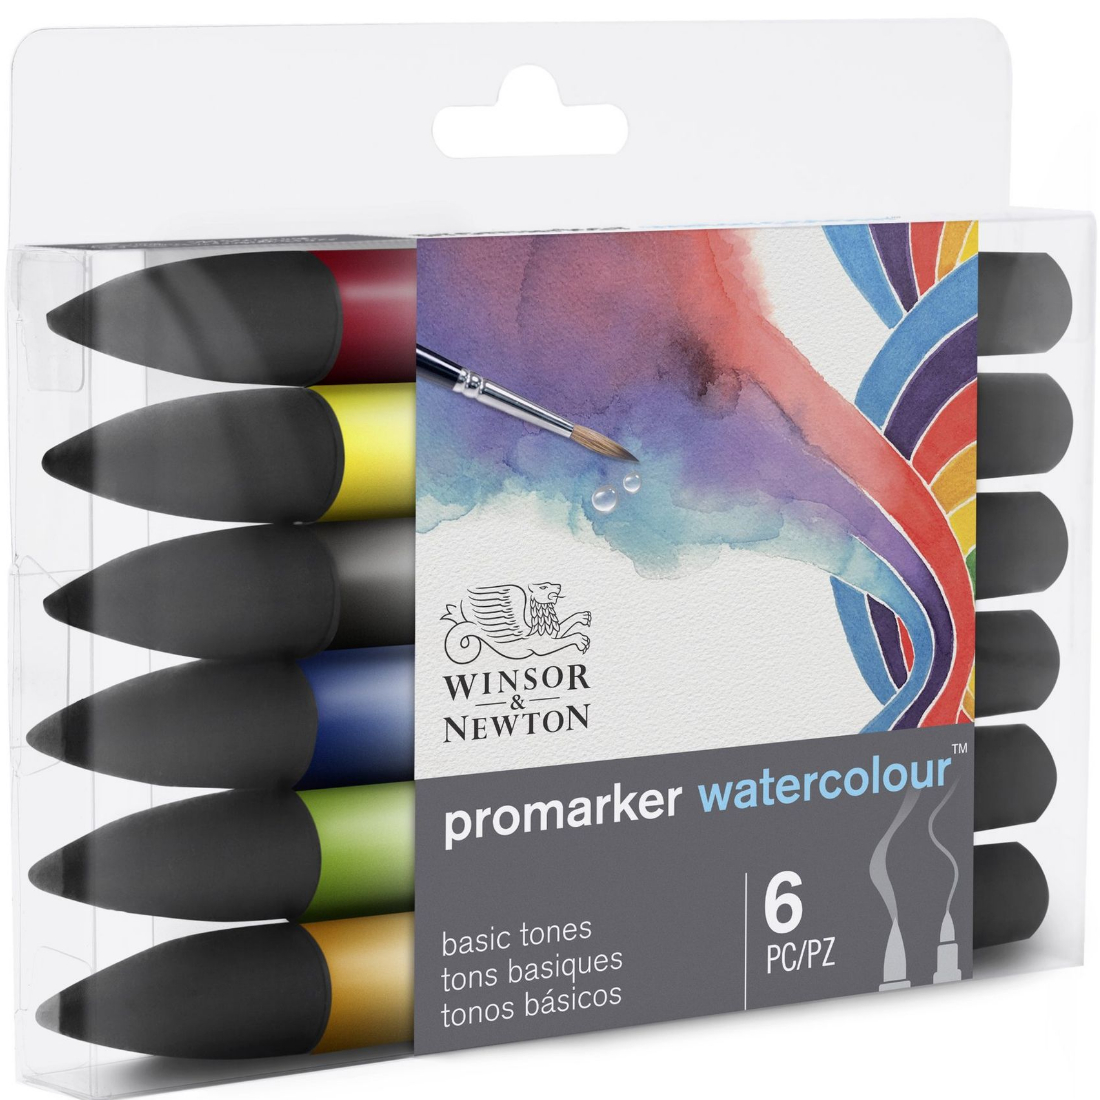 Marcador Promarker Watercolour Tons Básicos 6 Pcs winsor & newton